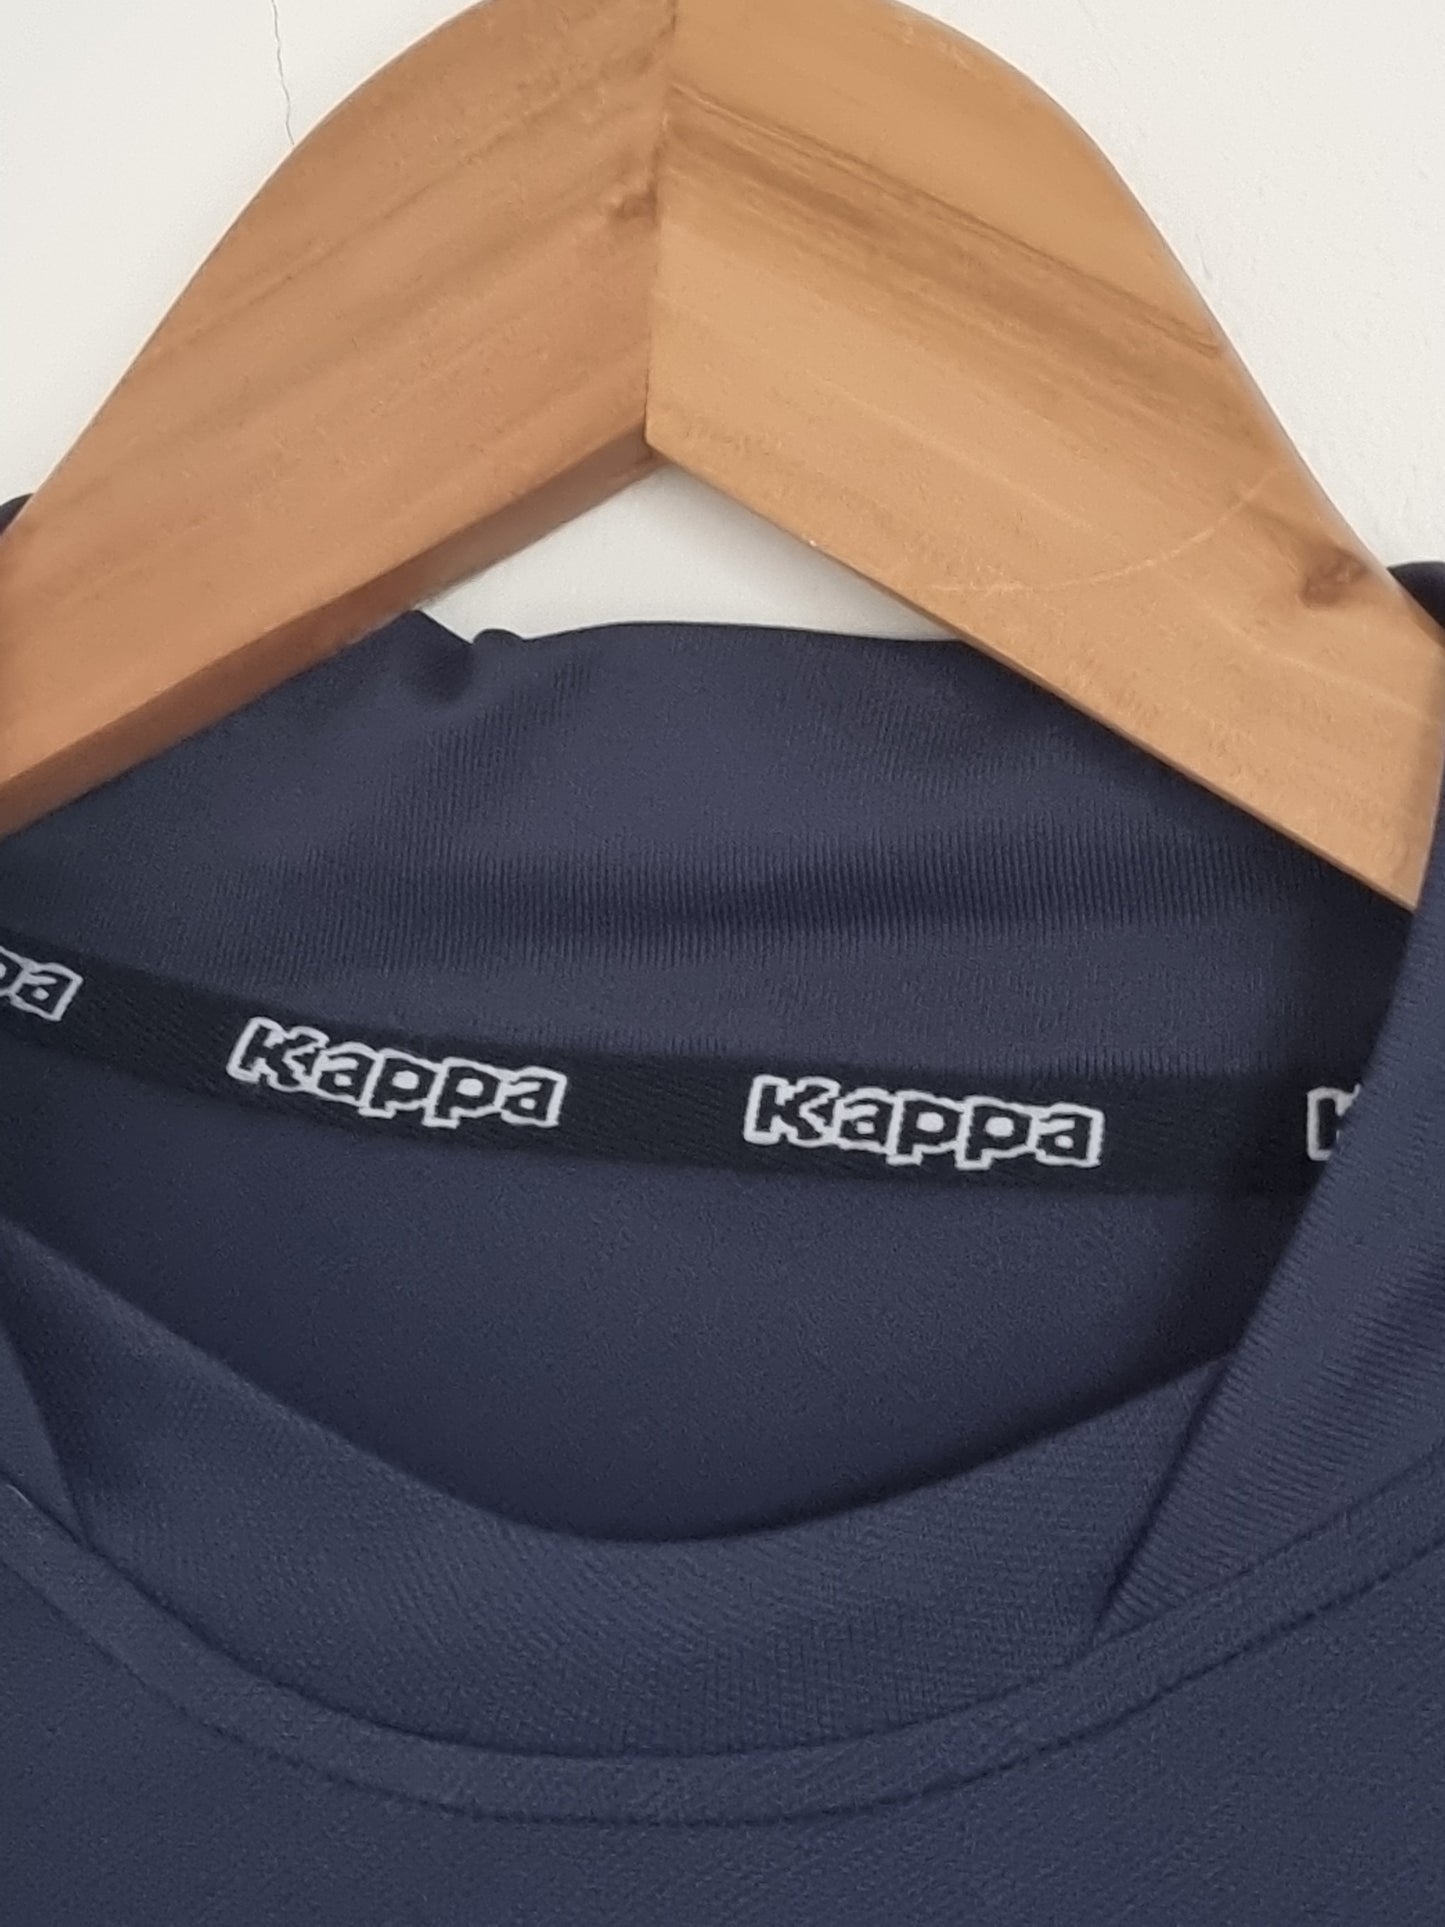 Kappa Italy 02/03 Training Shirt Large